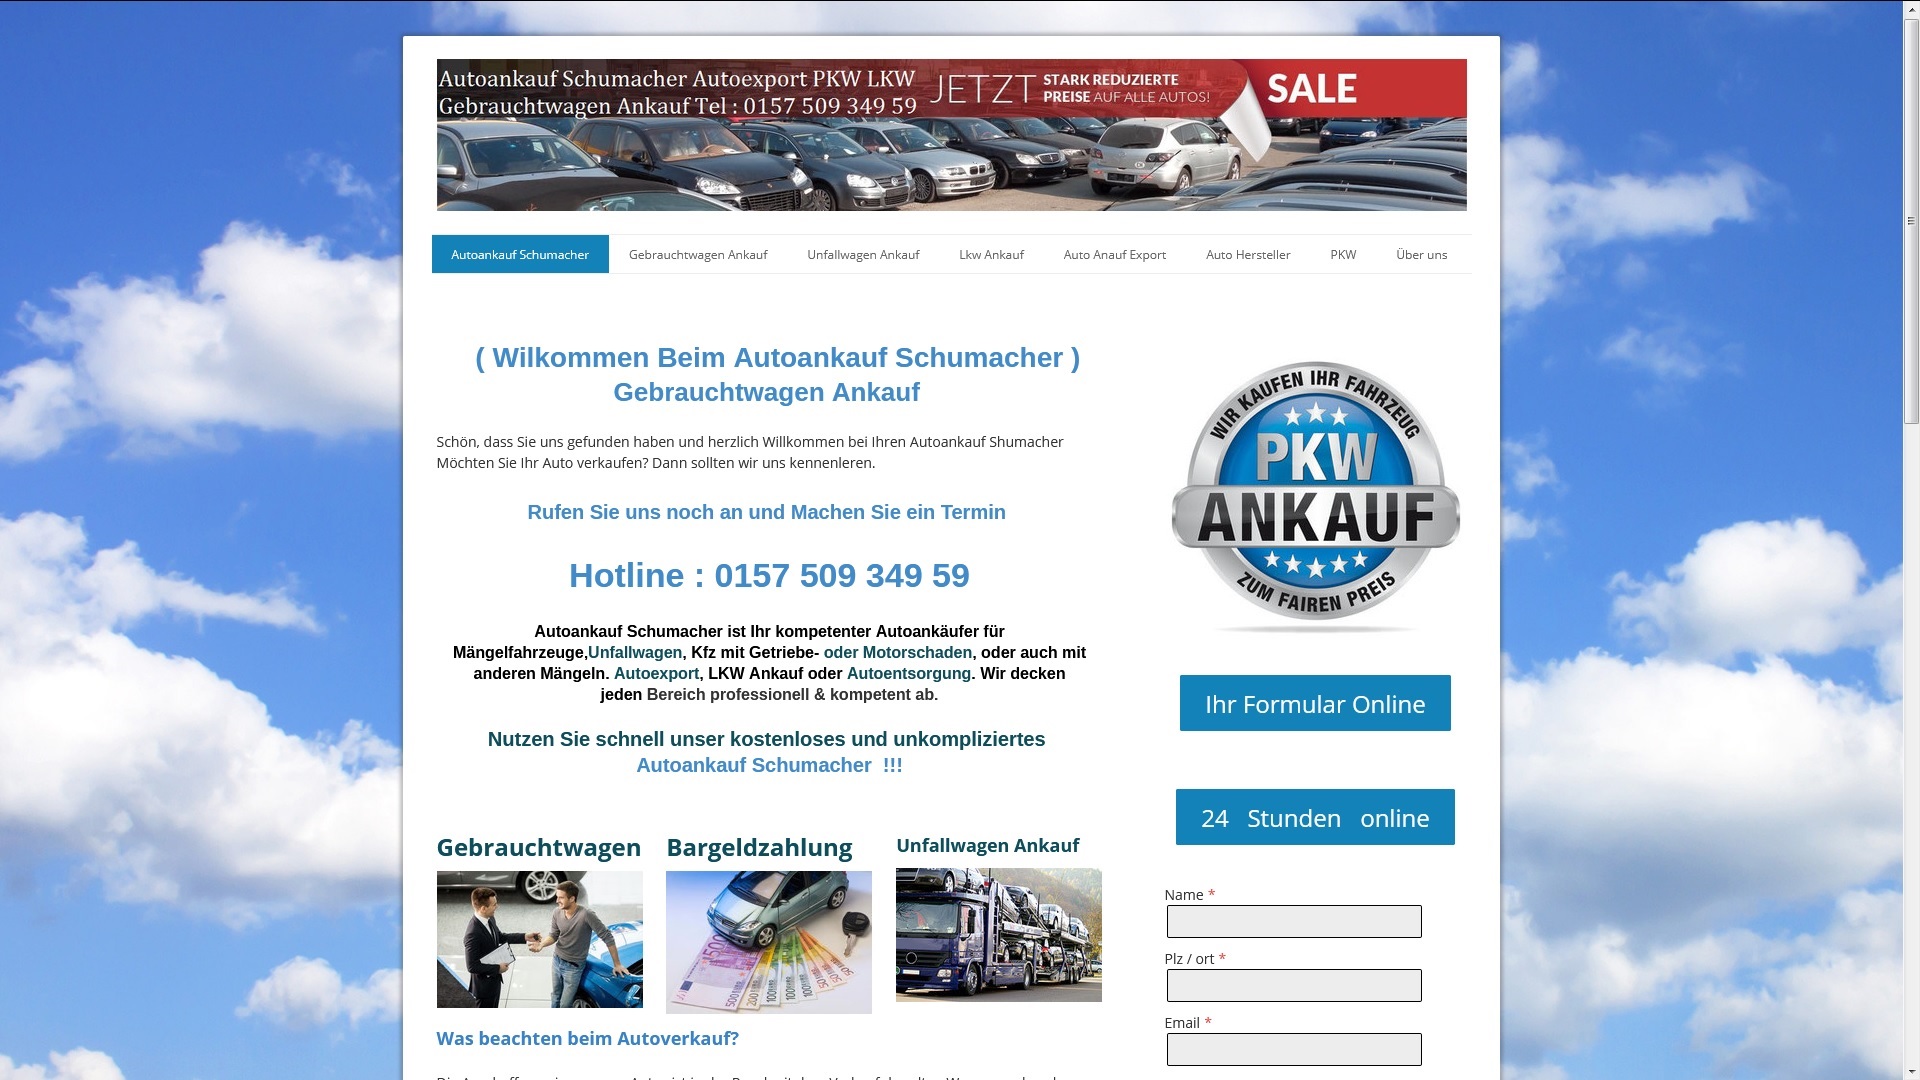 autoankauf frankfurt oder kauft altfahrzeuge auch ohne tuev - Autoankauf Frankfurt Oder kauft Altfahrzeuge auch ohne TÜV